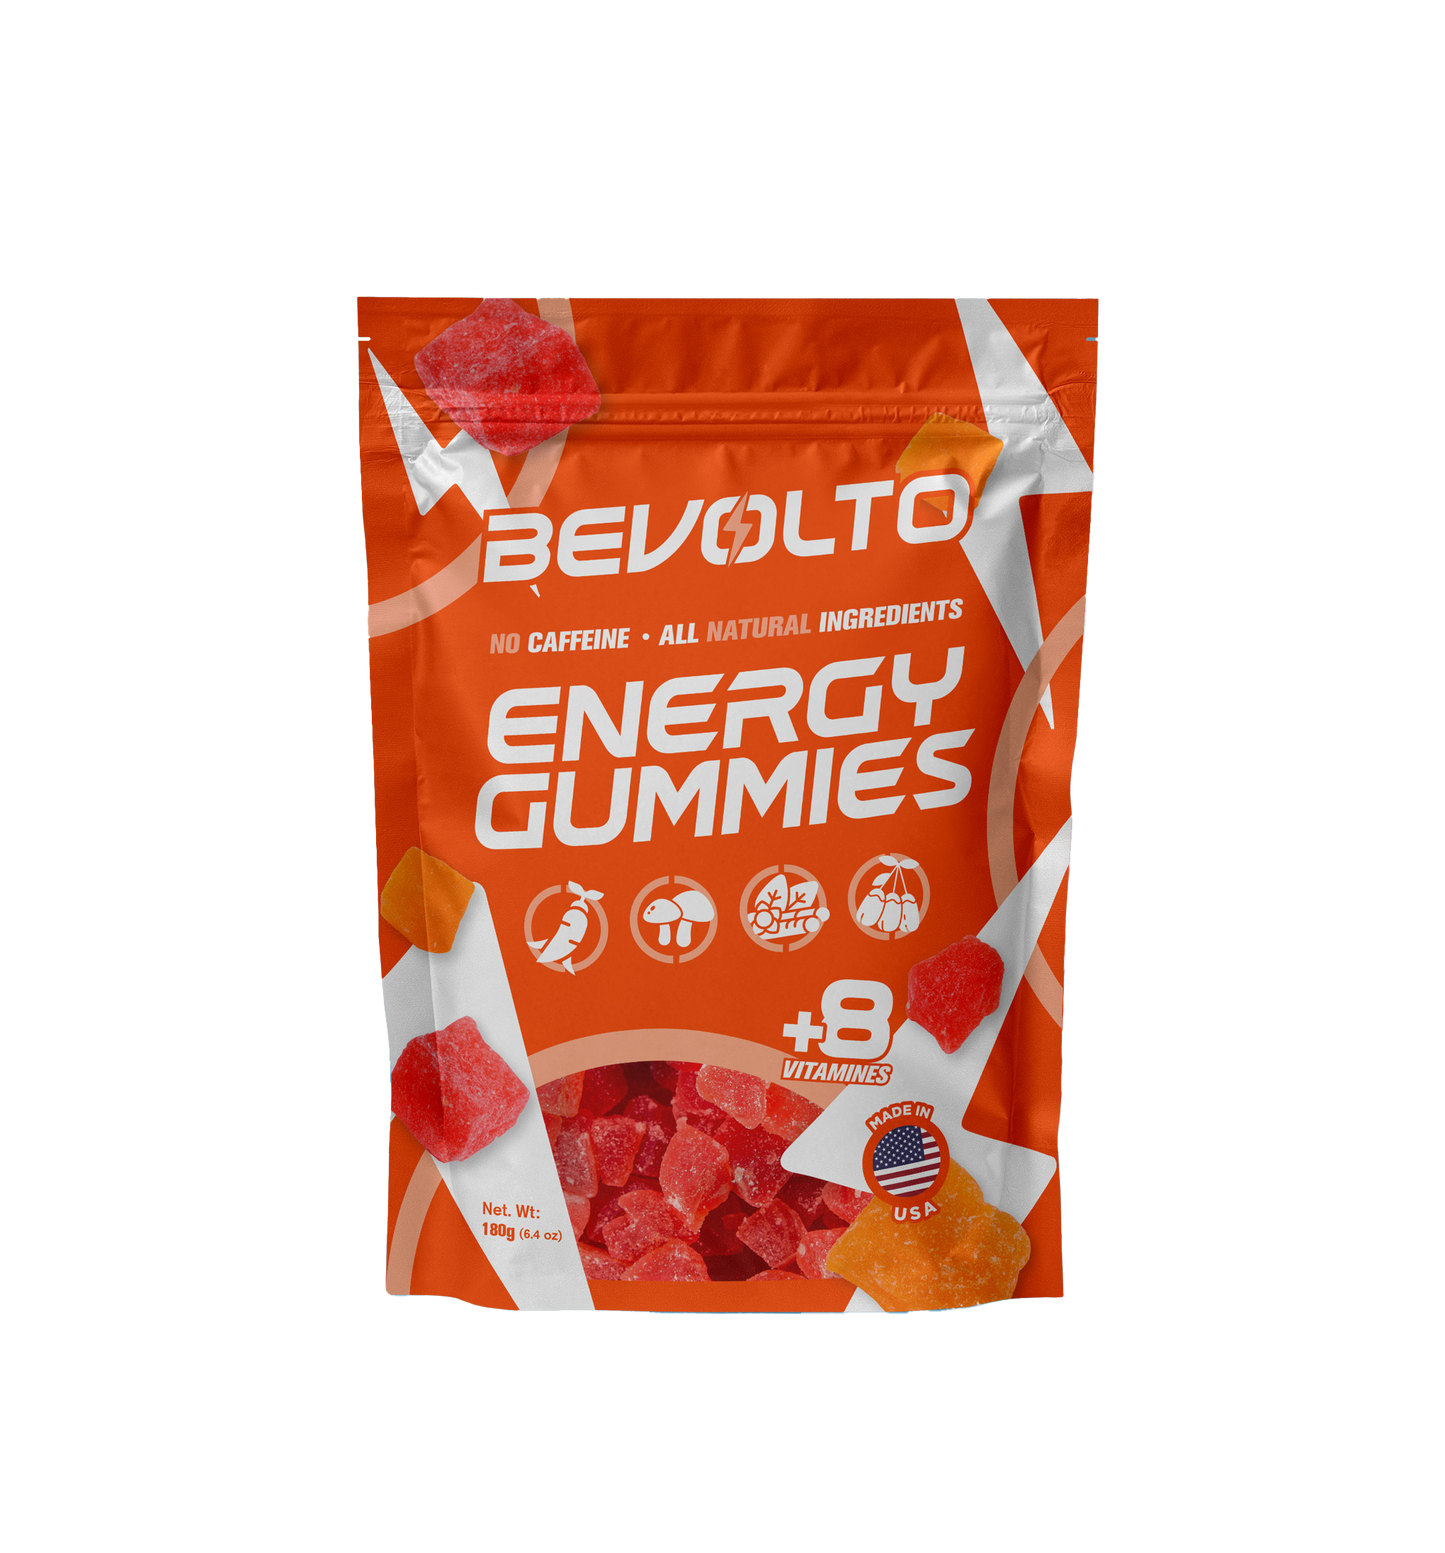 Bevolto Energy Gummies 10ct